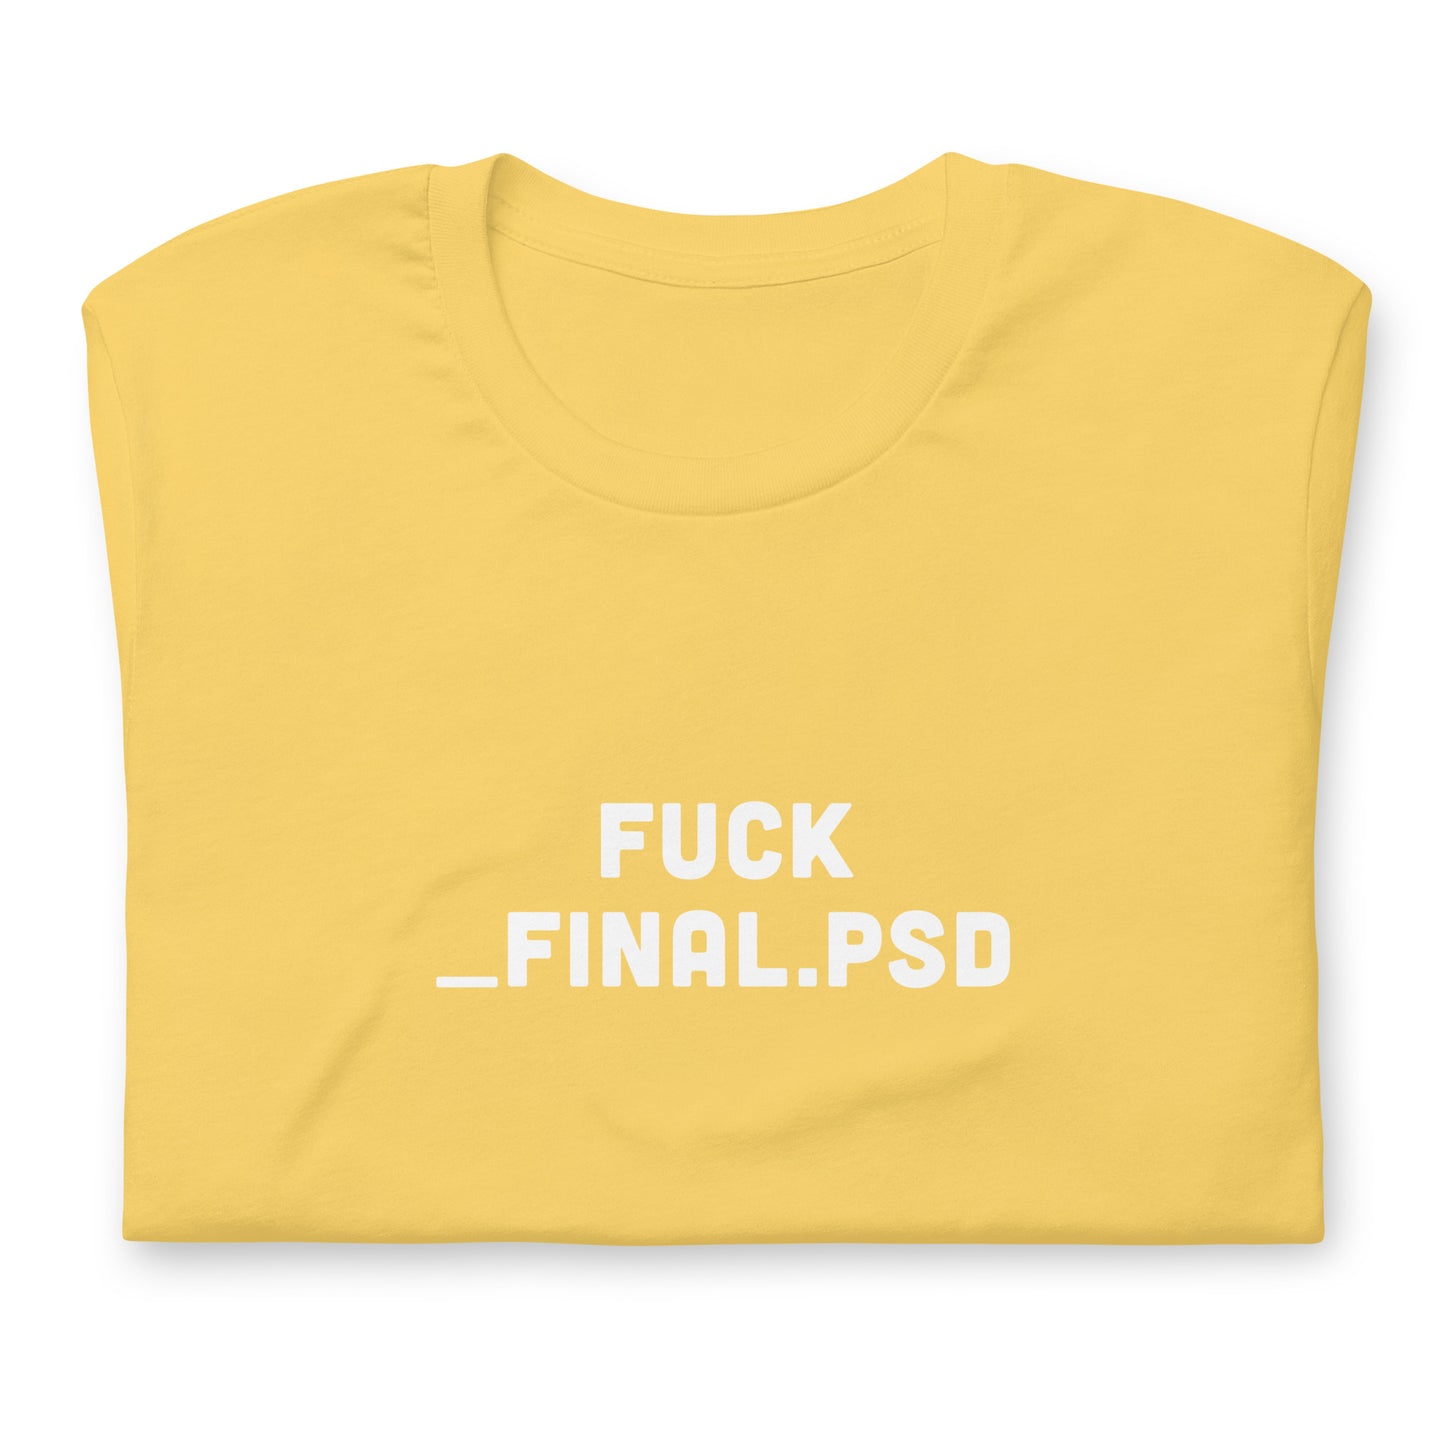 Fuck _final.psd Unisex t-shirt